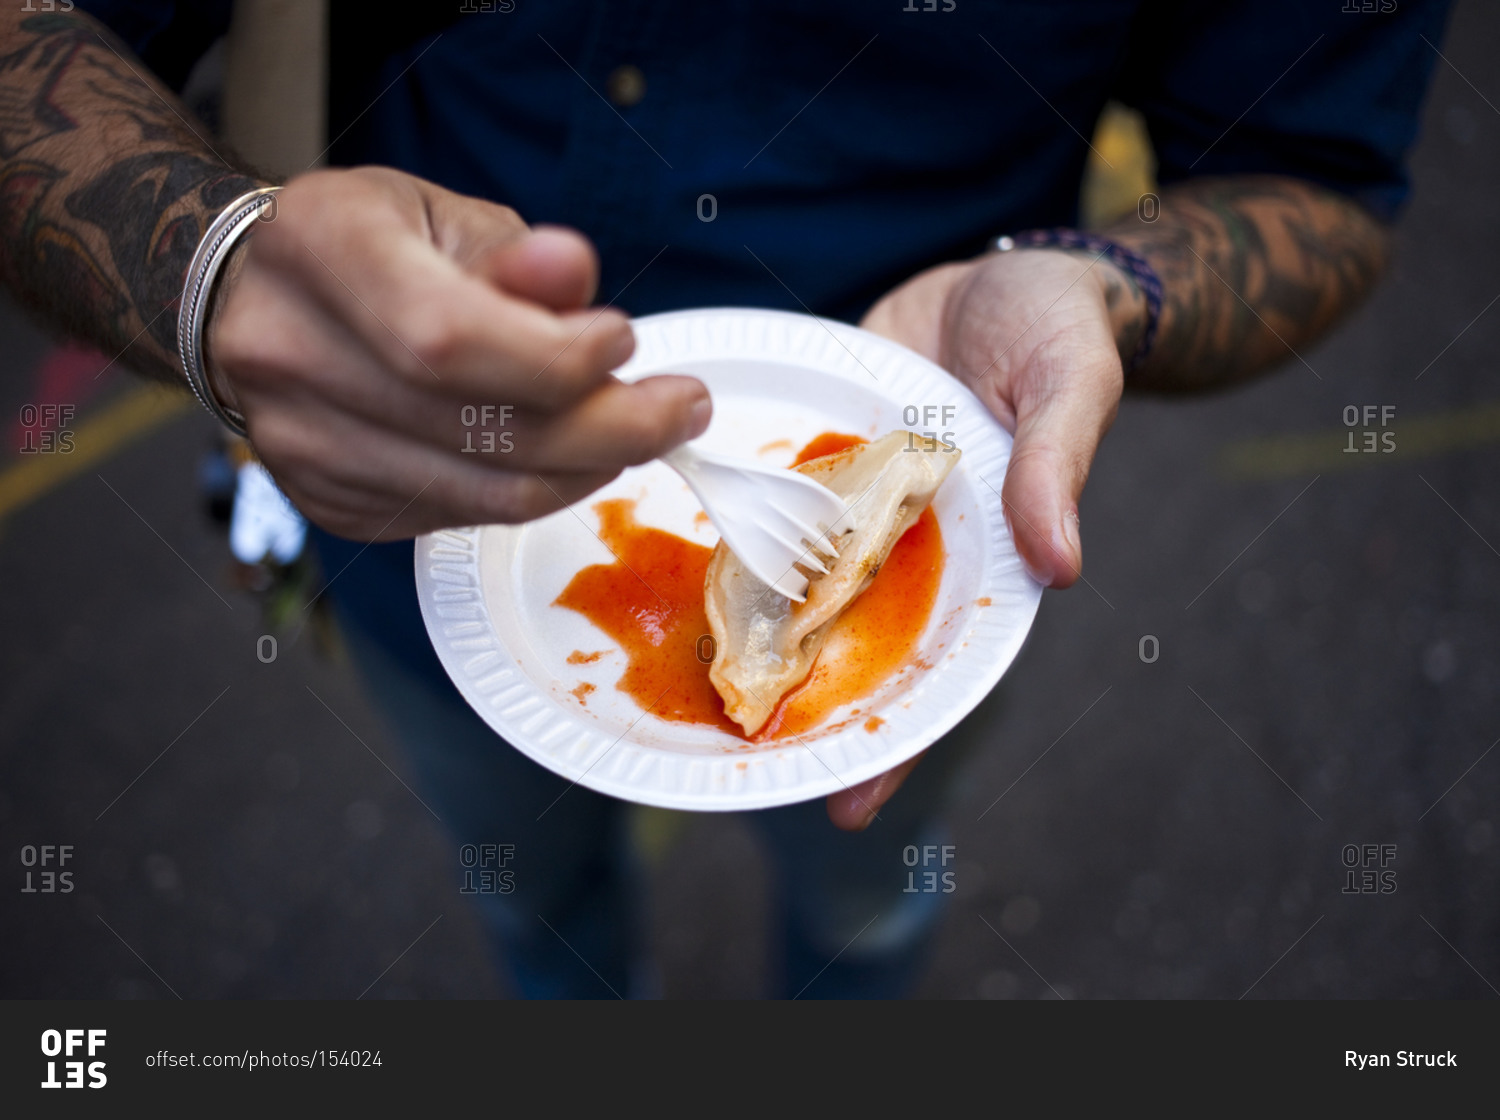 Man eating street food on plastic plate